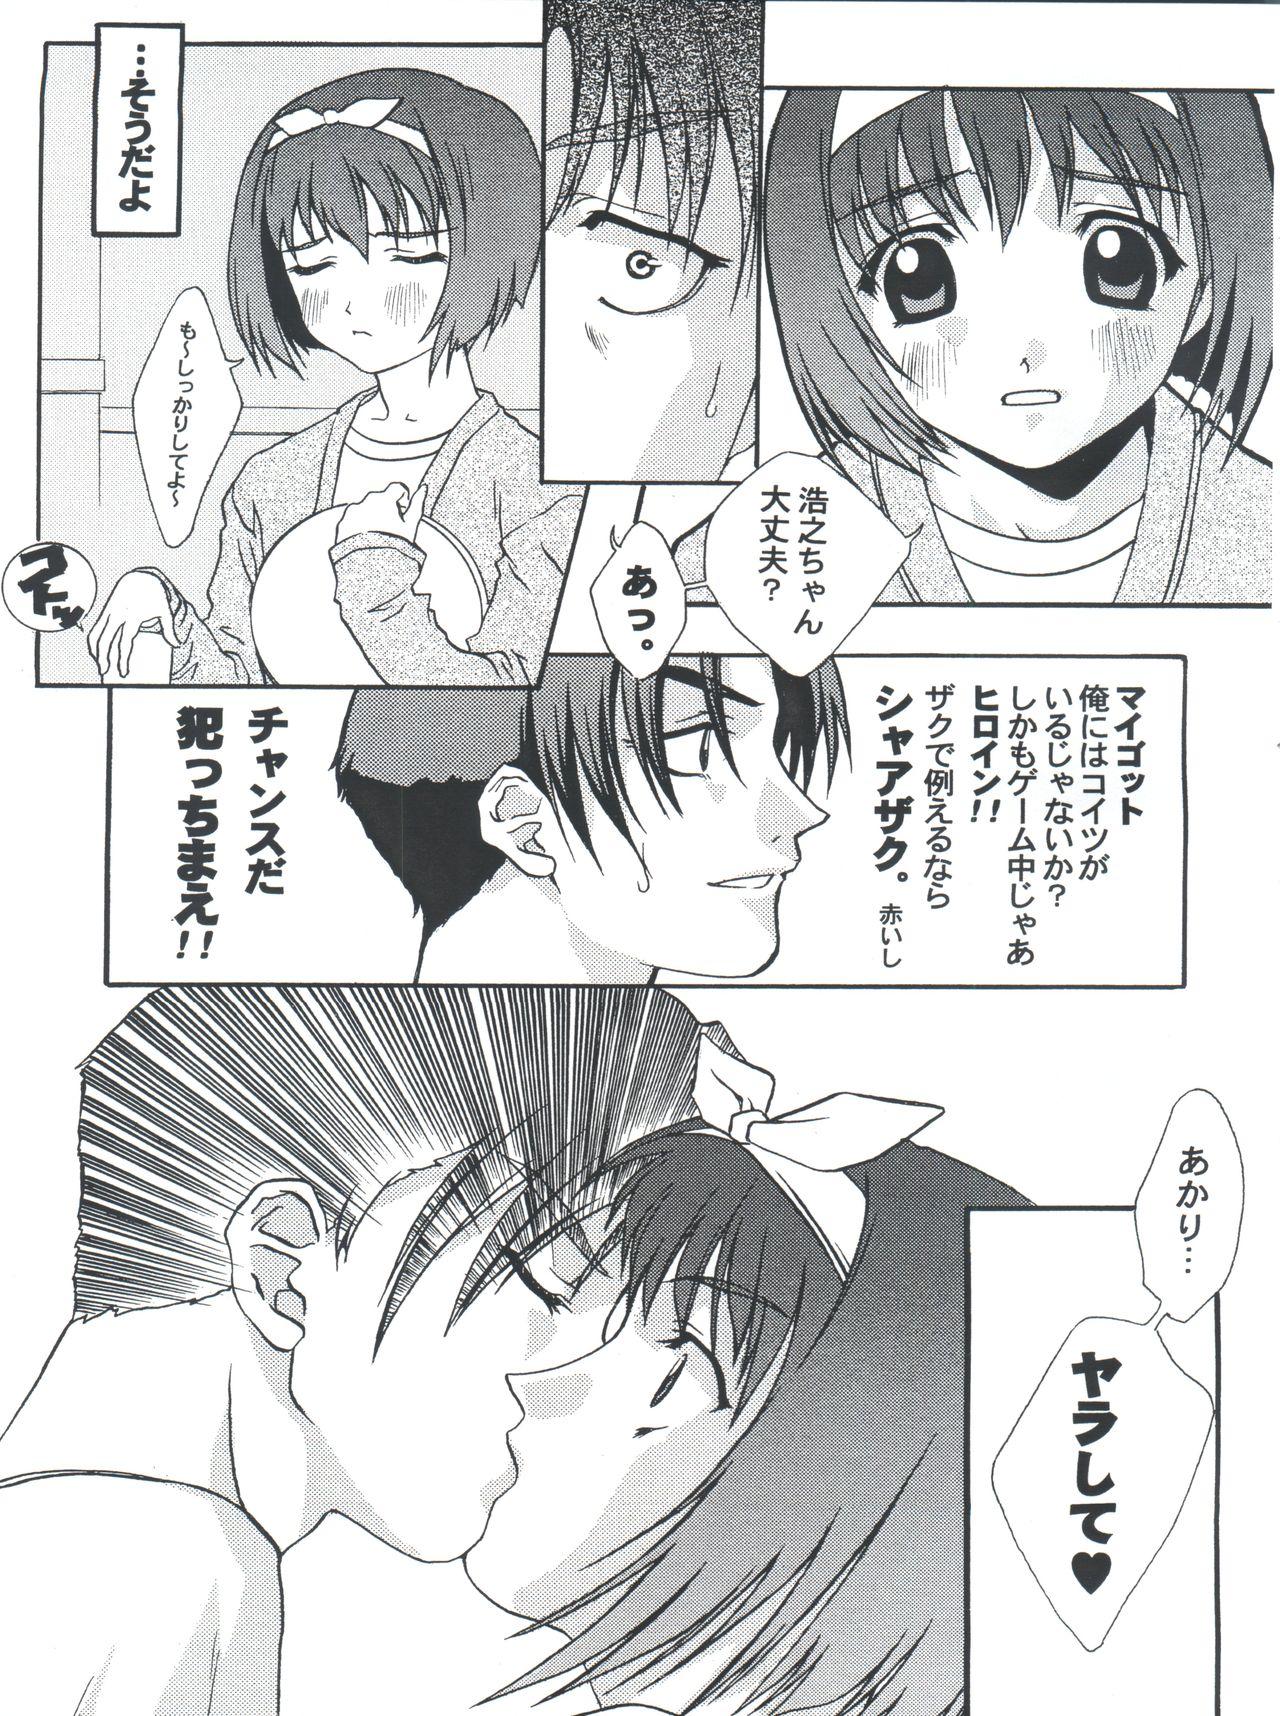 Rimjob Nani? - Sakura taisen To heart Bwc - Page 7